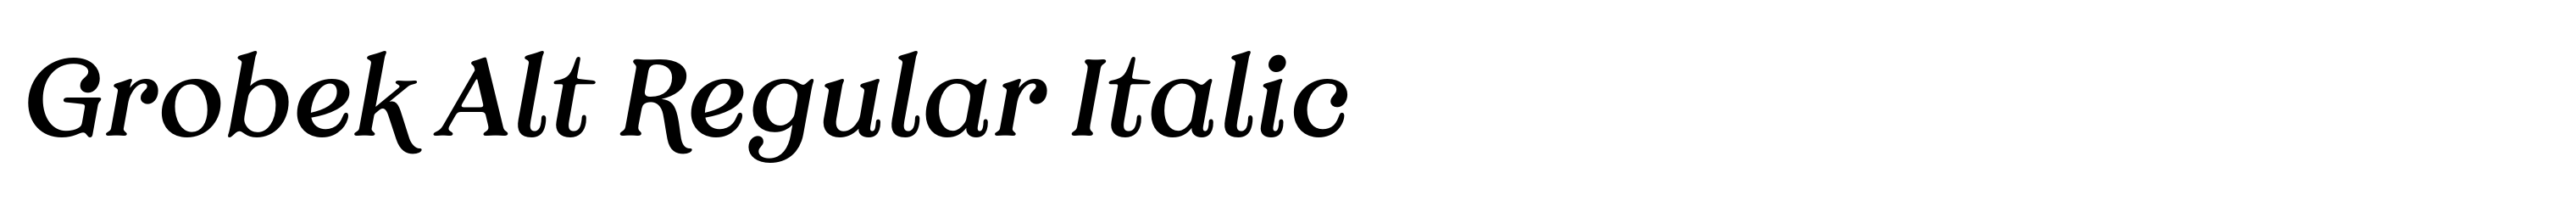 Grobek Alt Regular Italic